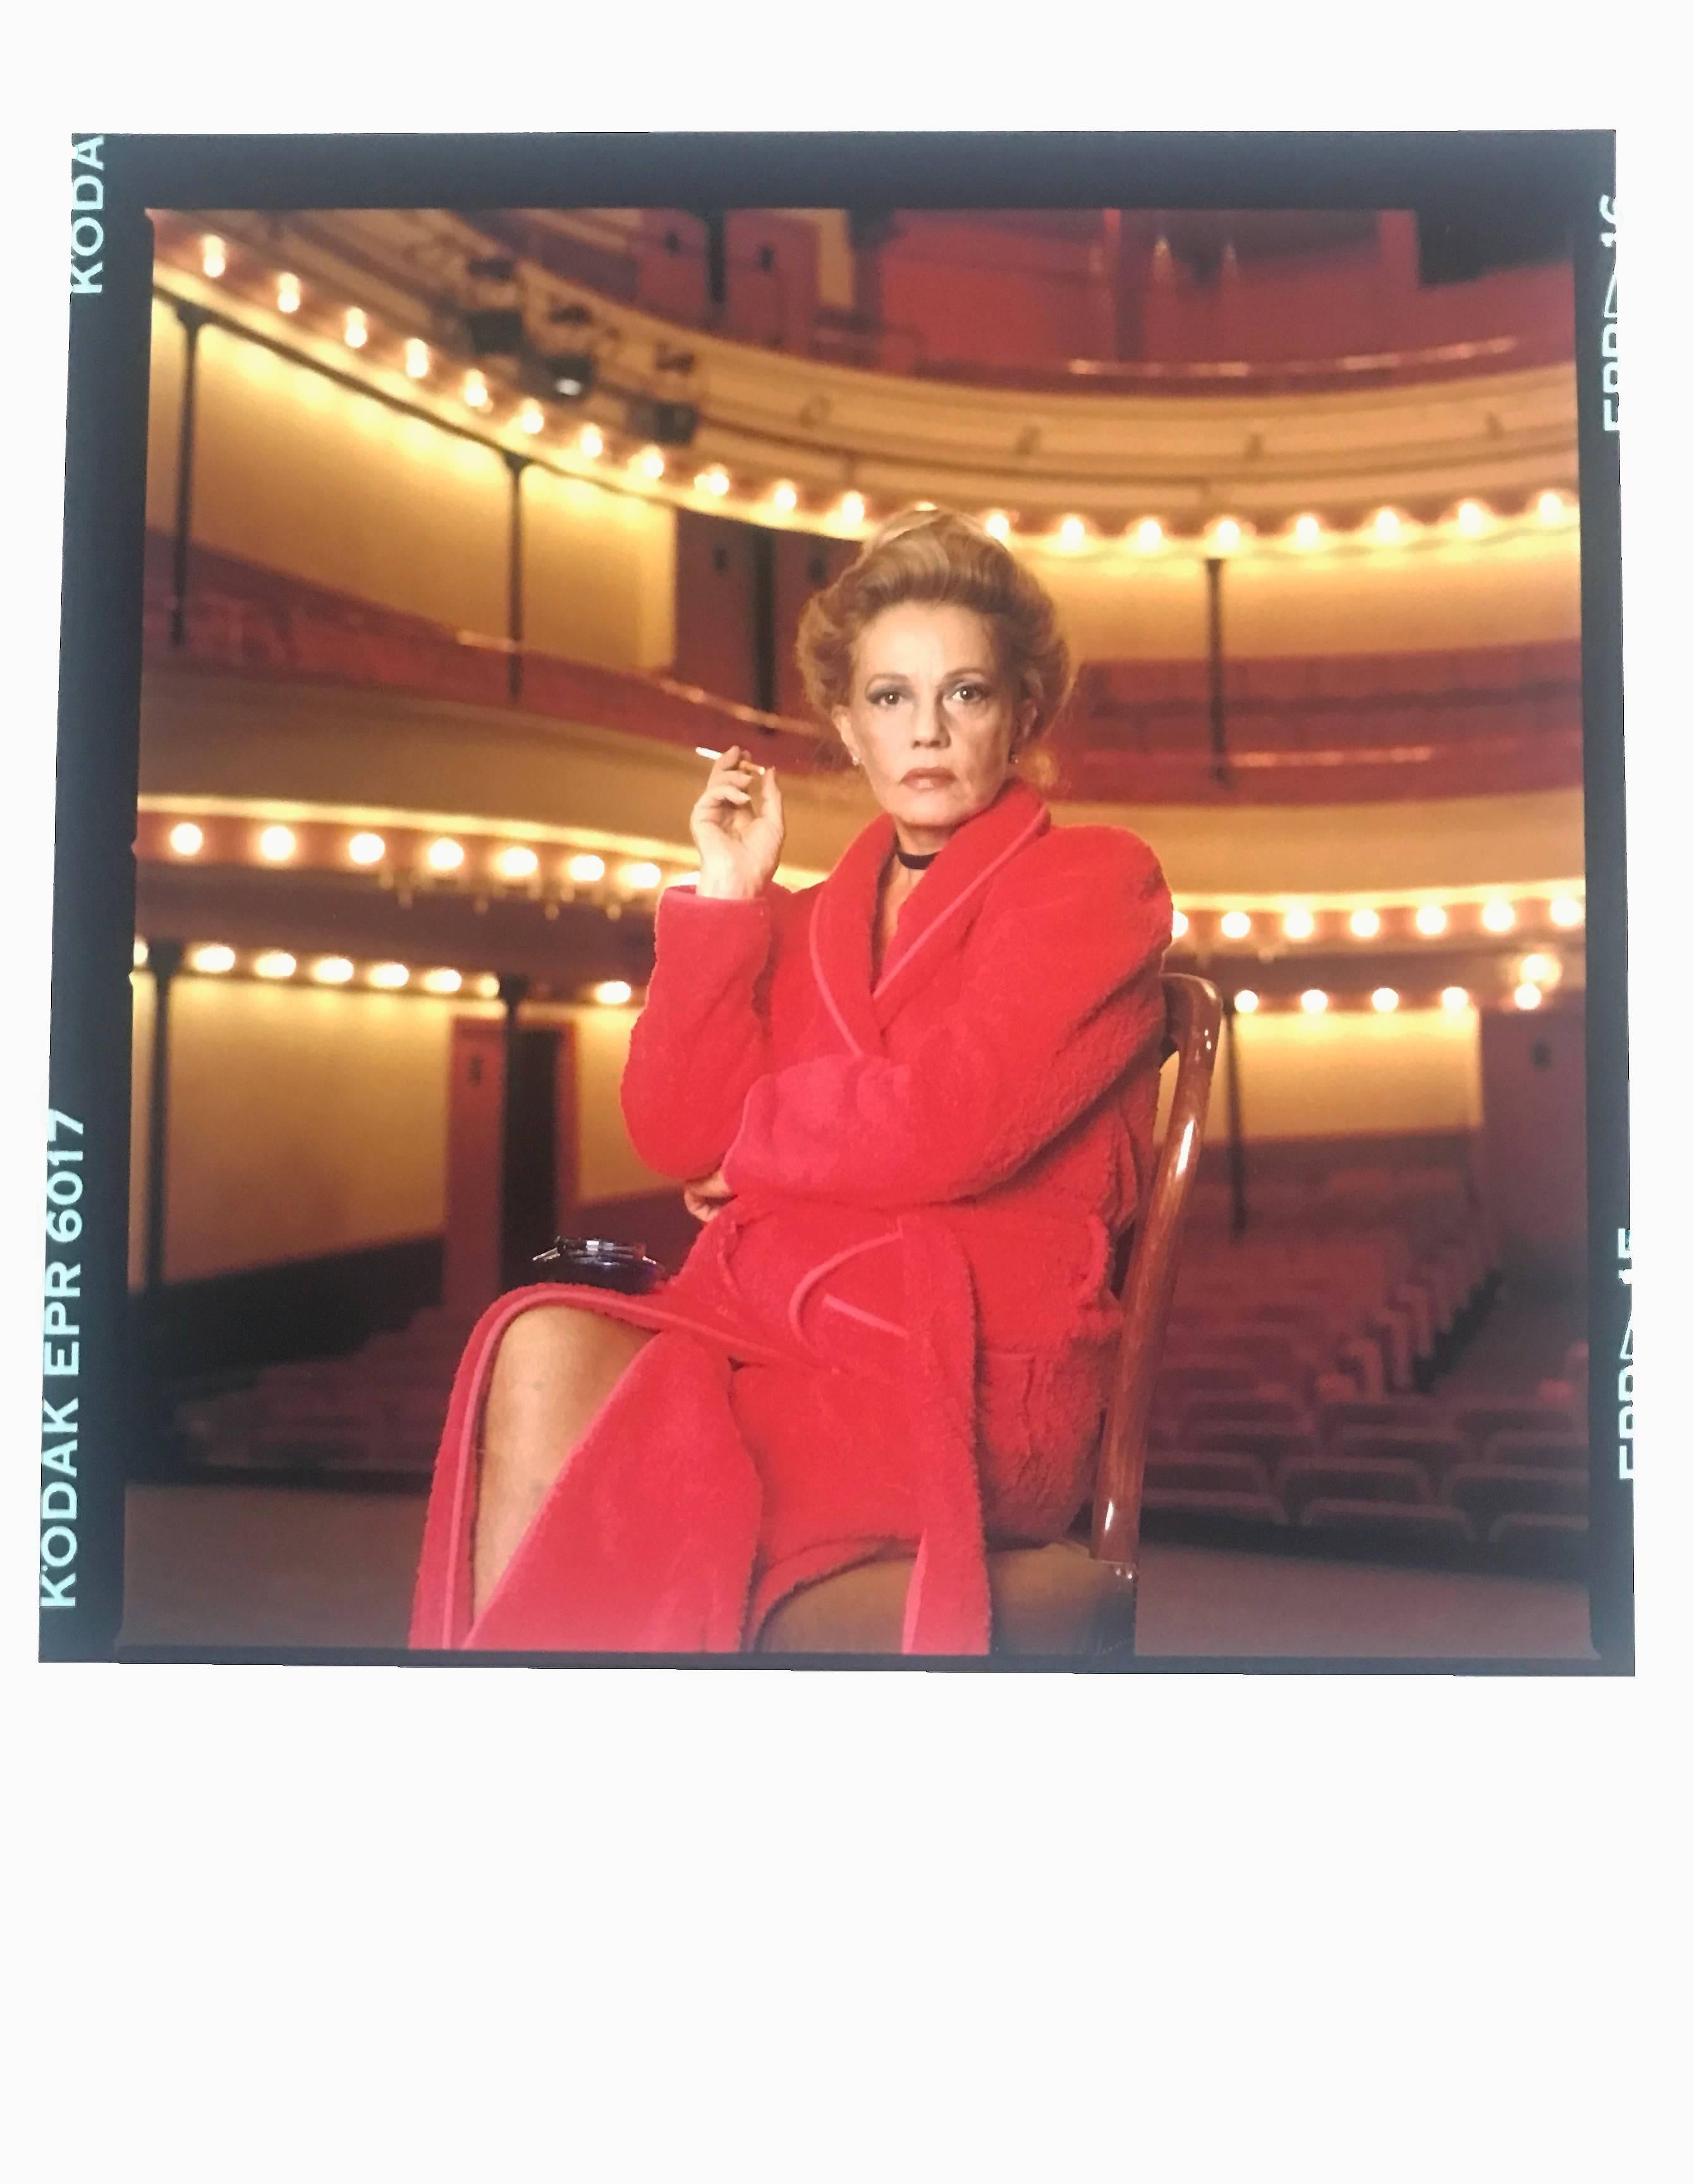 Jeanne Moreau, Paris, Contemporary Color Portrait of Iconic French Actress